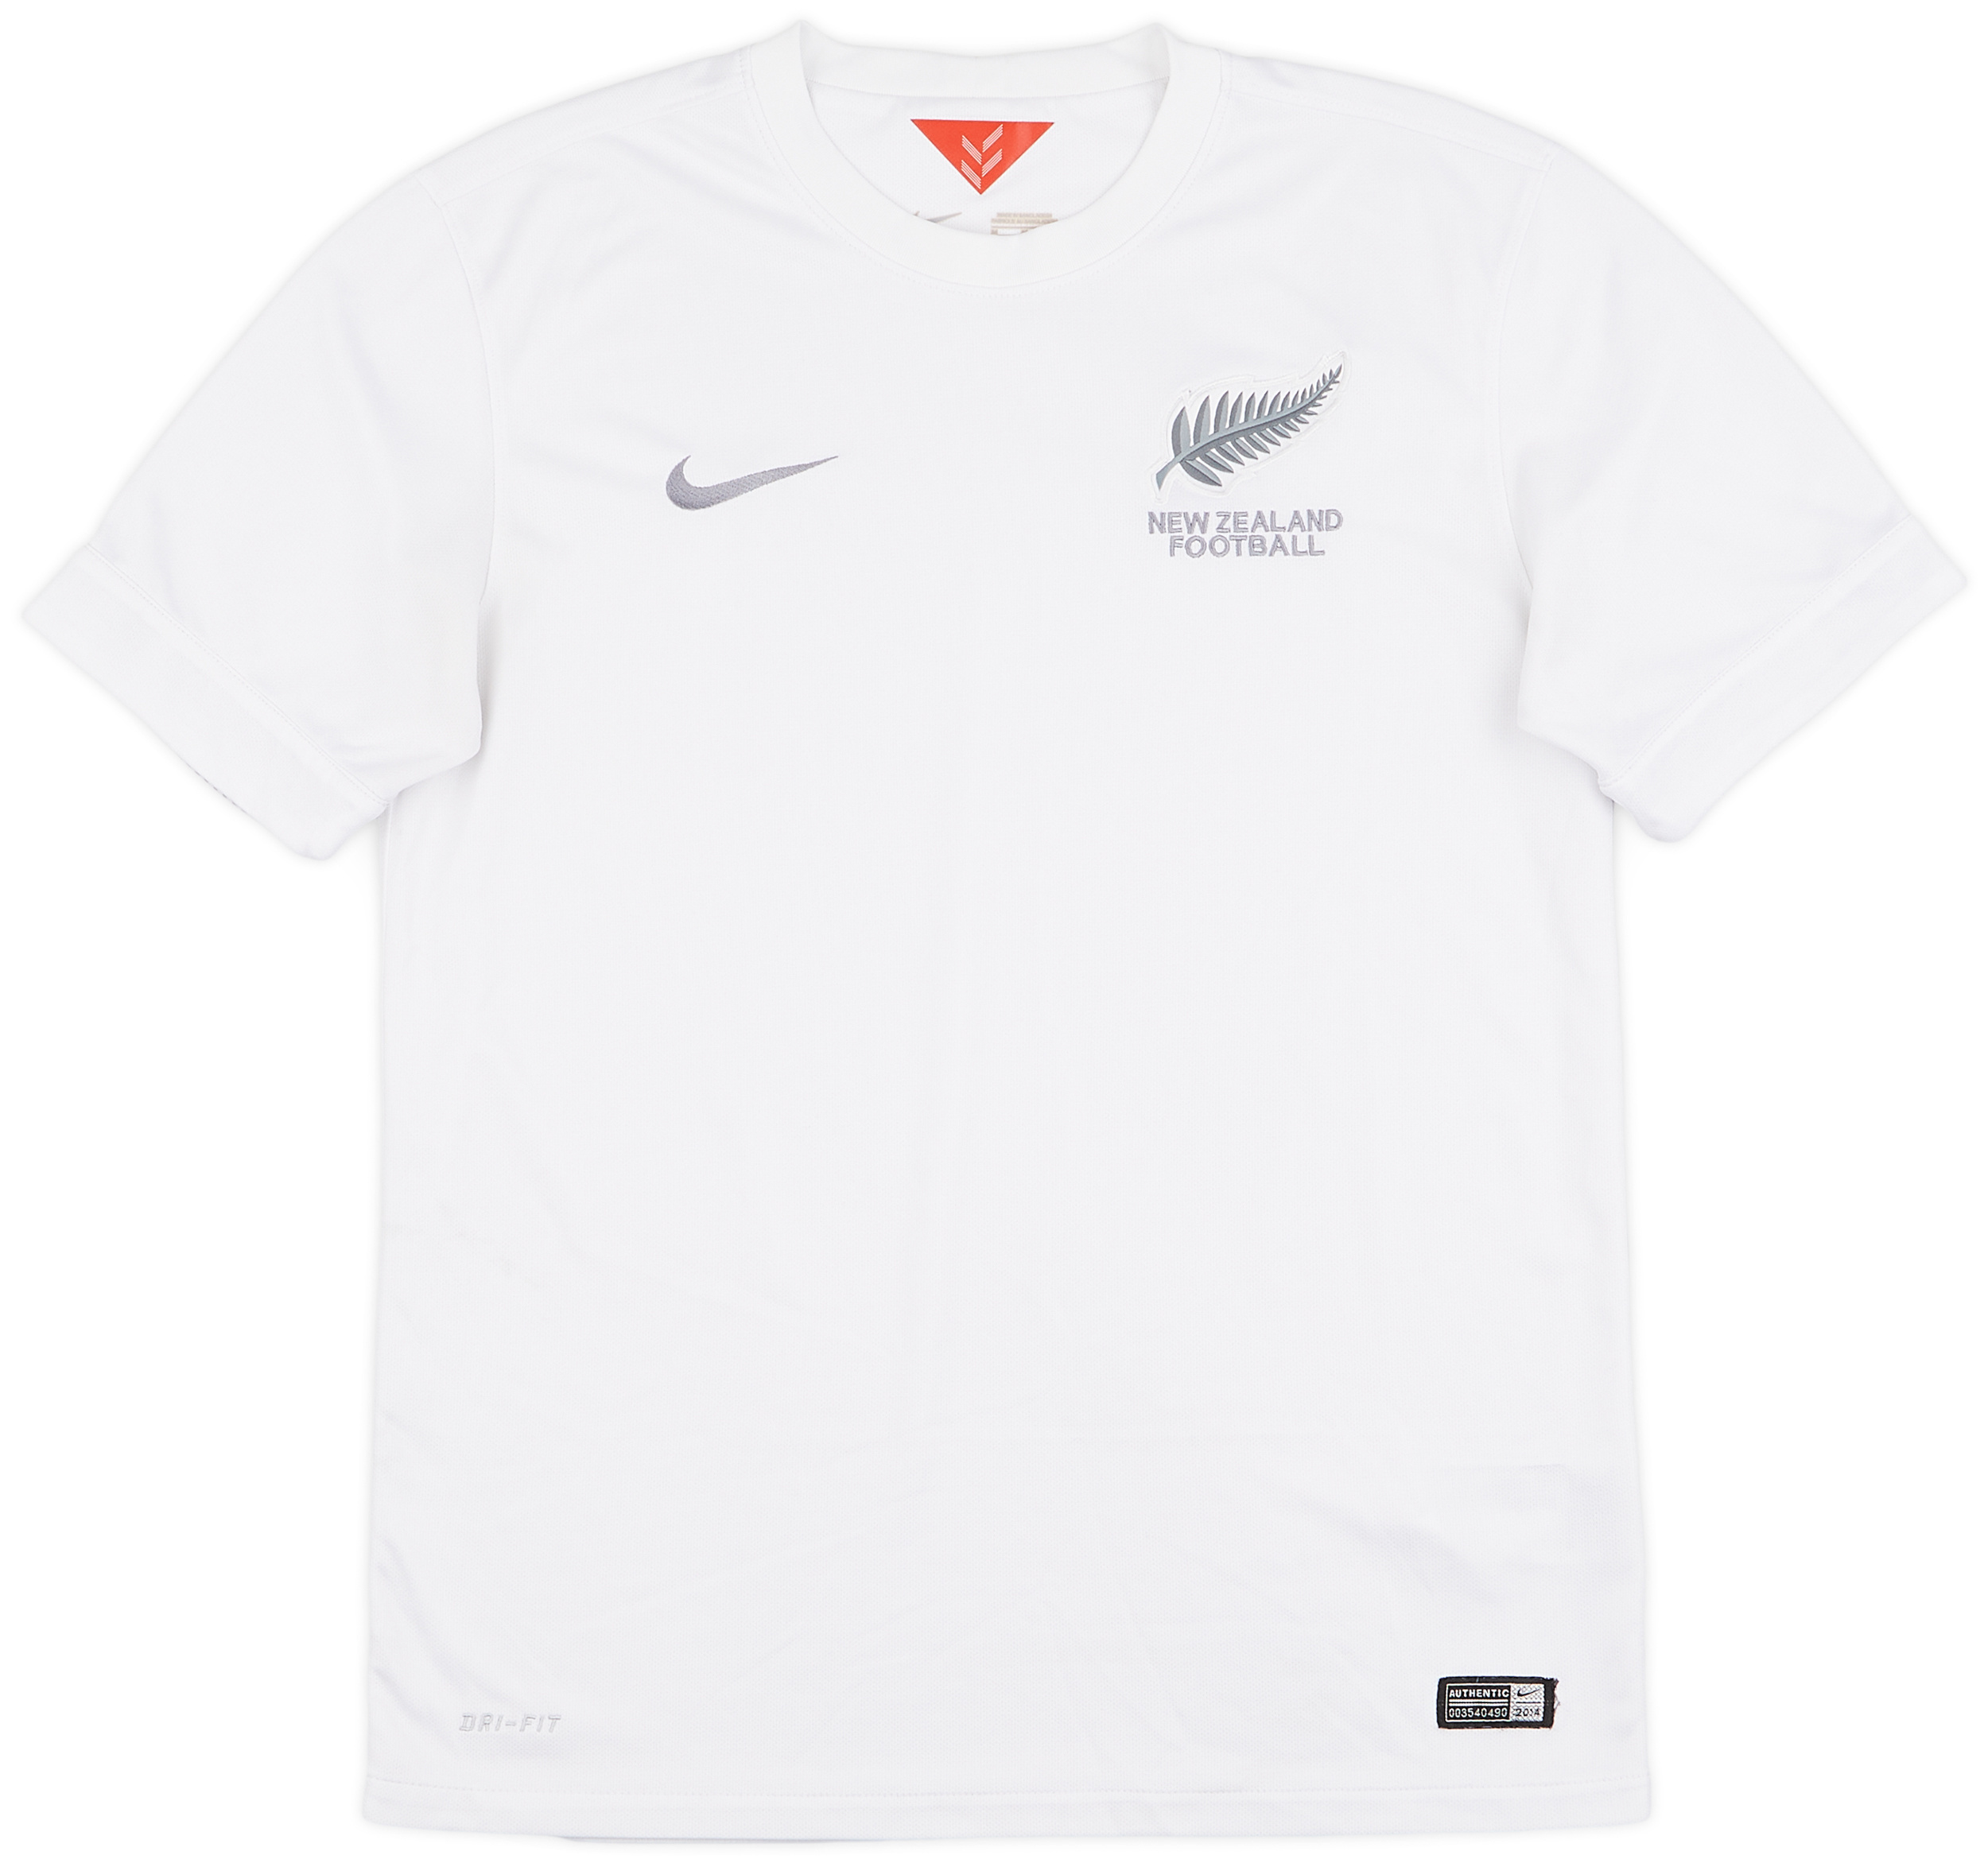 2014-15 New Zealand Home Shirt - 8/10 - ()